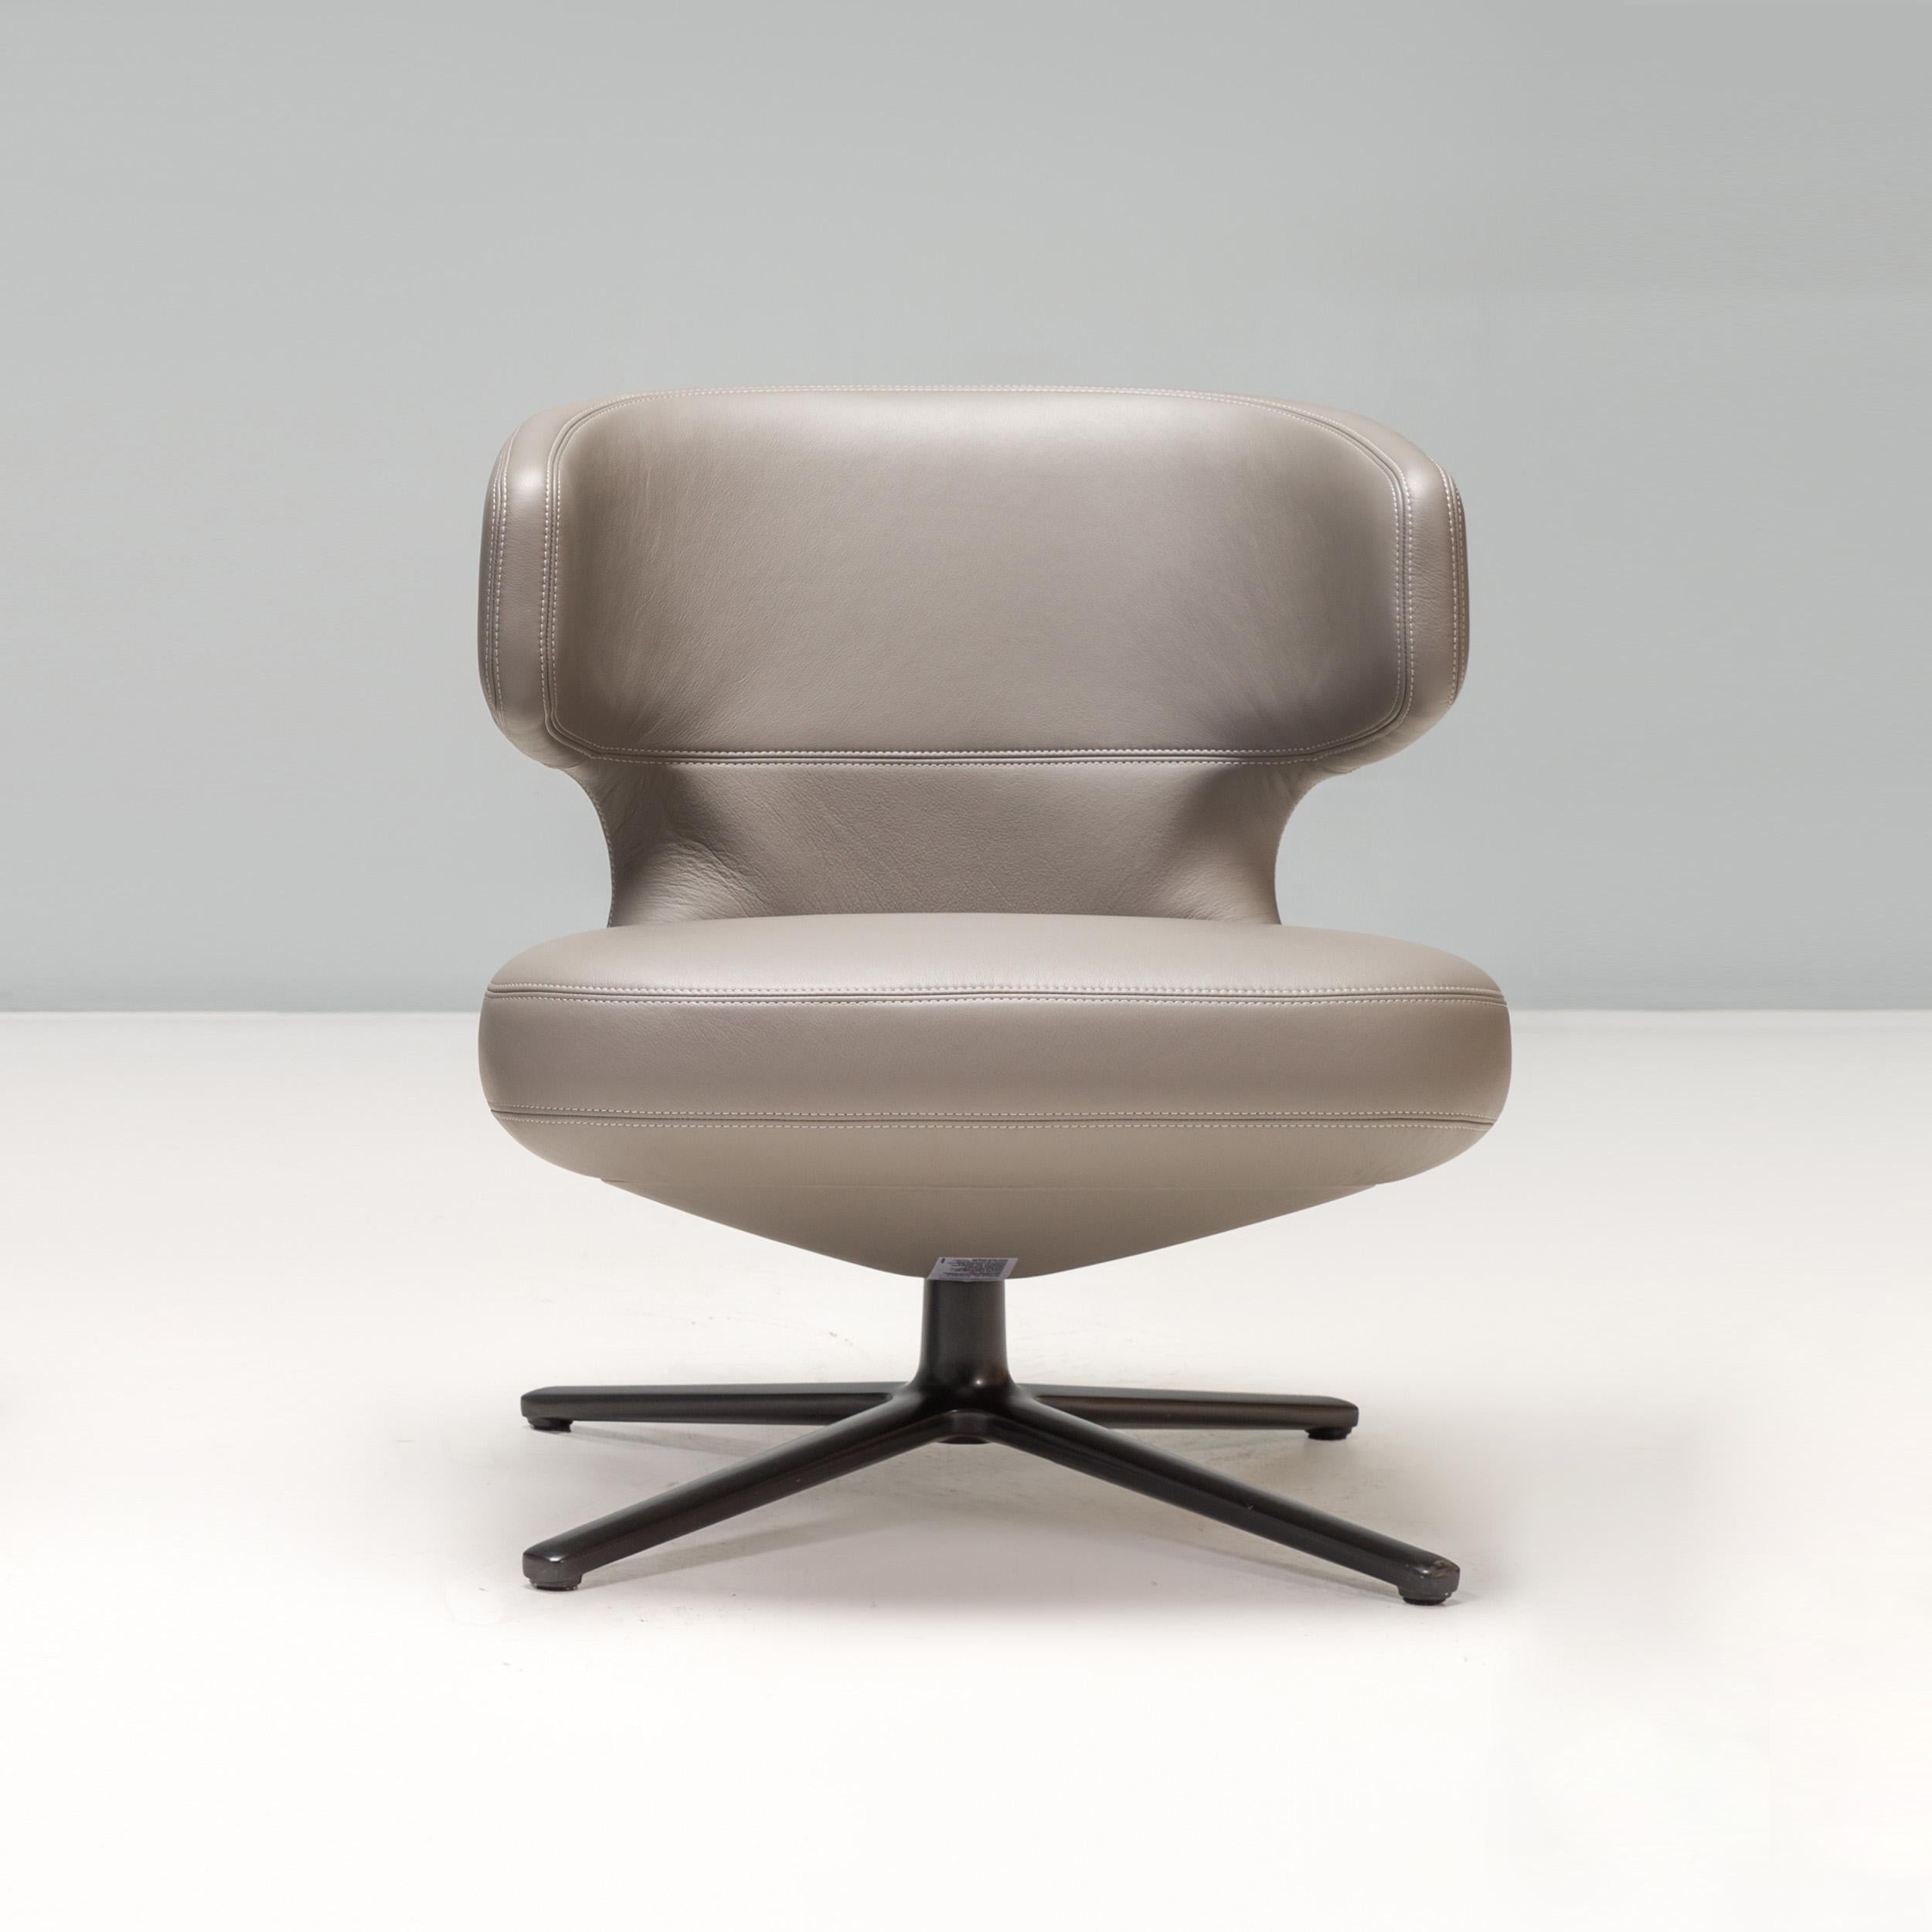 Conçue par Antonio Citterio, la chaise Petit Repos a été introduite dans la collection Vitra en 2013.

Ce fauteuil offre le même confort ultime que les grands modèles Repos, mais dans une forme plus compacte. 

Tapissé de cuir gris, ce fauteuil est